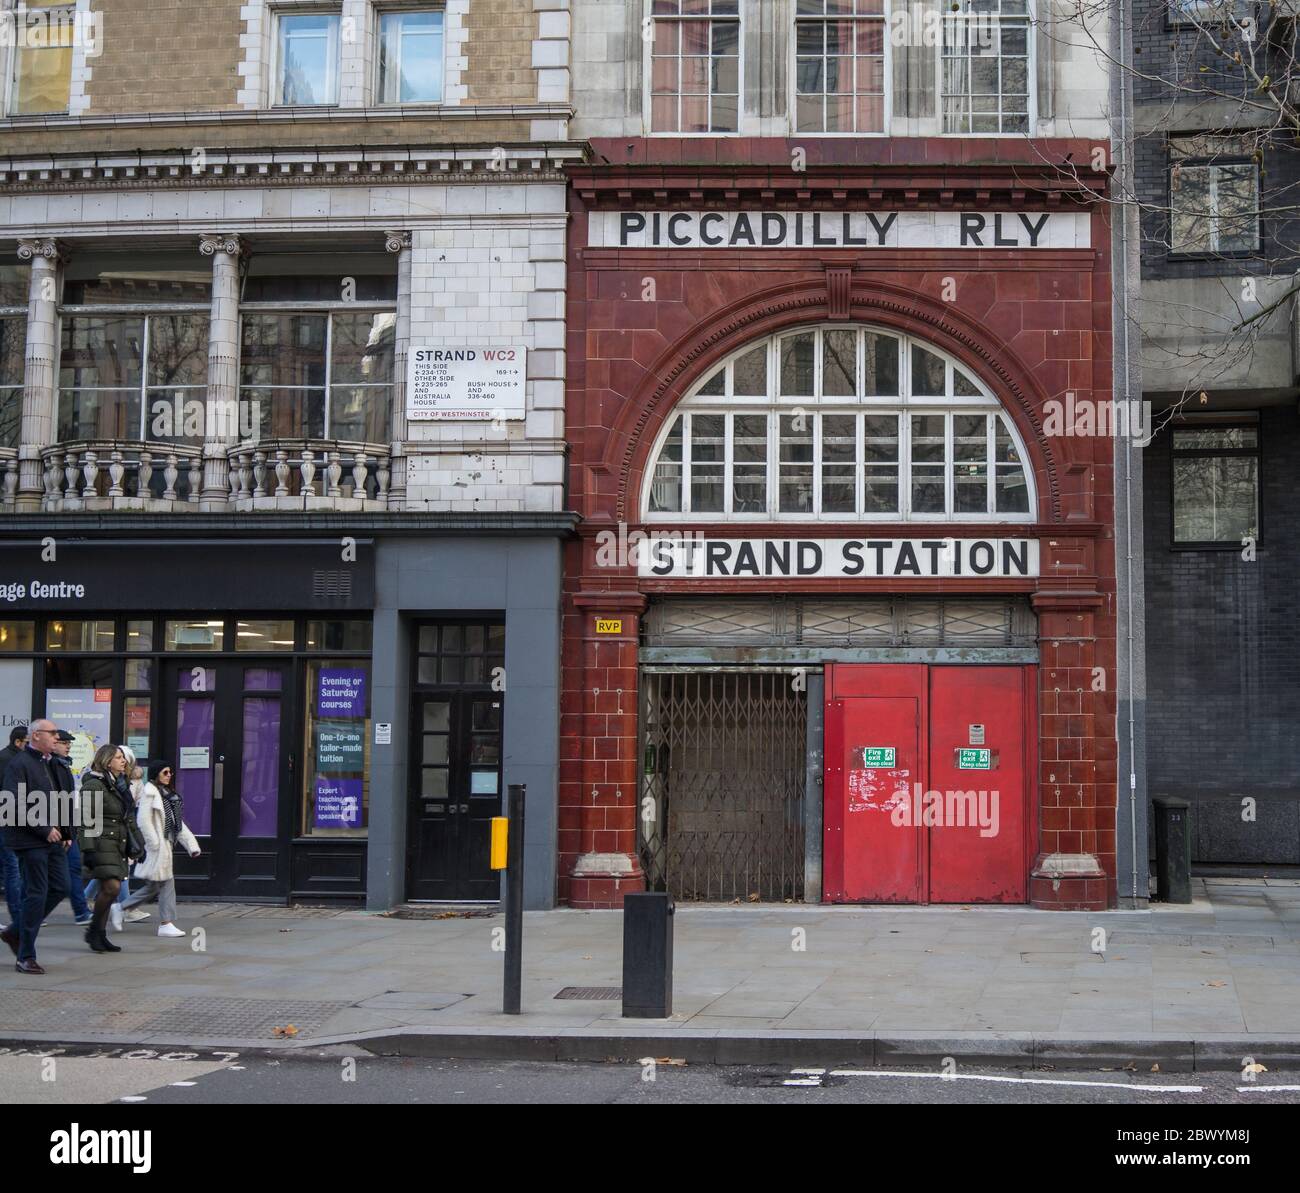 Vecchia stazione della metropolitana Strand London in disuso. Vecchio edificio rosso con cartello Piccadilly RLY. Londra Foto Stock